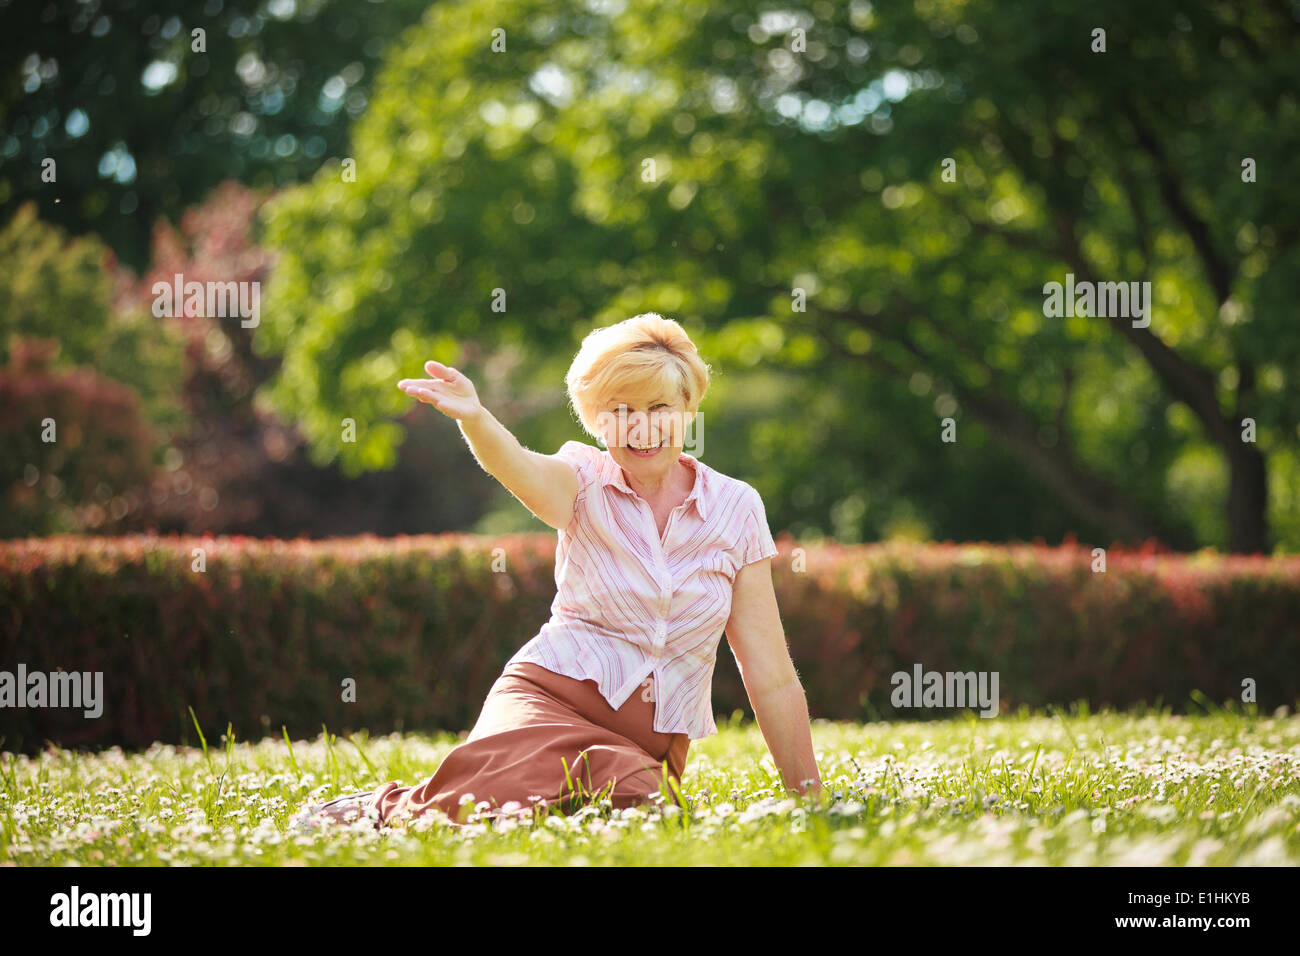 Jouissance. Des émotions positives. Vieille Femme sortant reposant sur l'herbe Banque D'Images